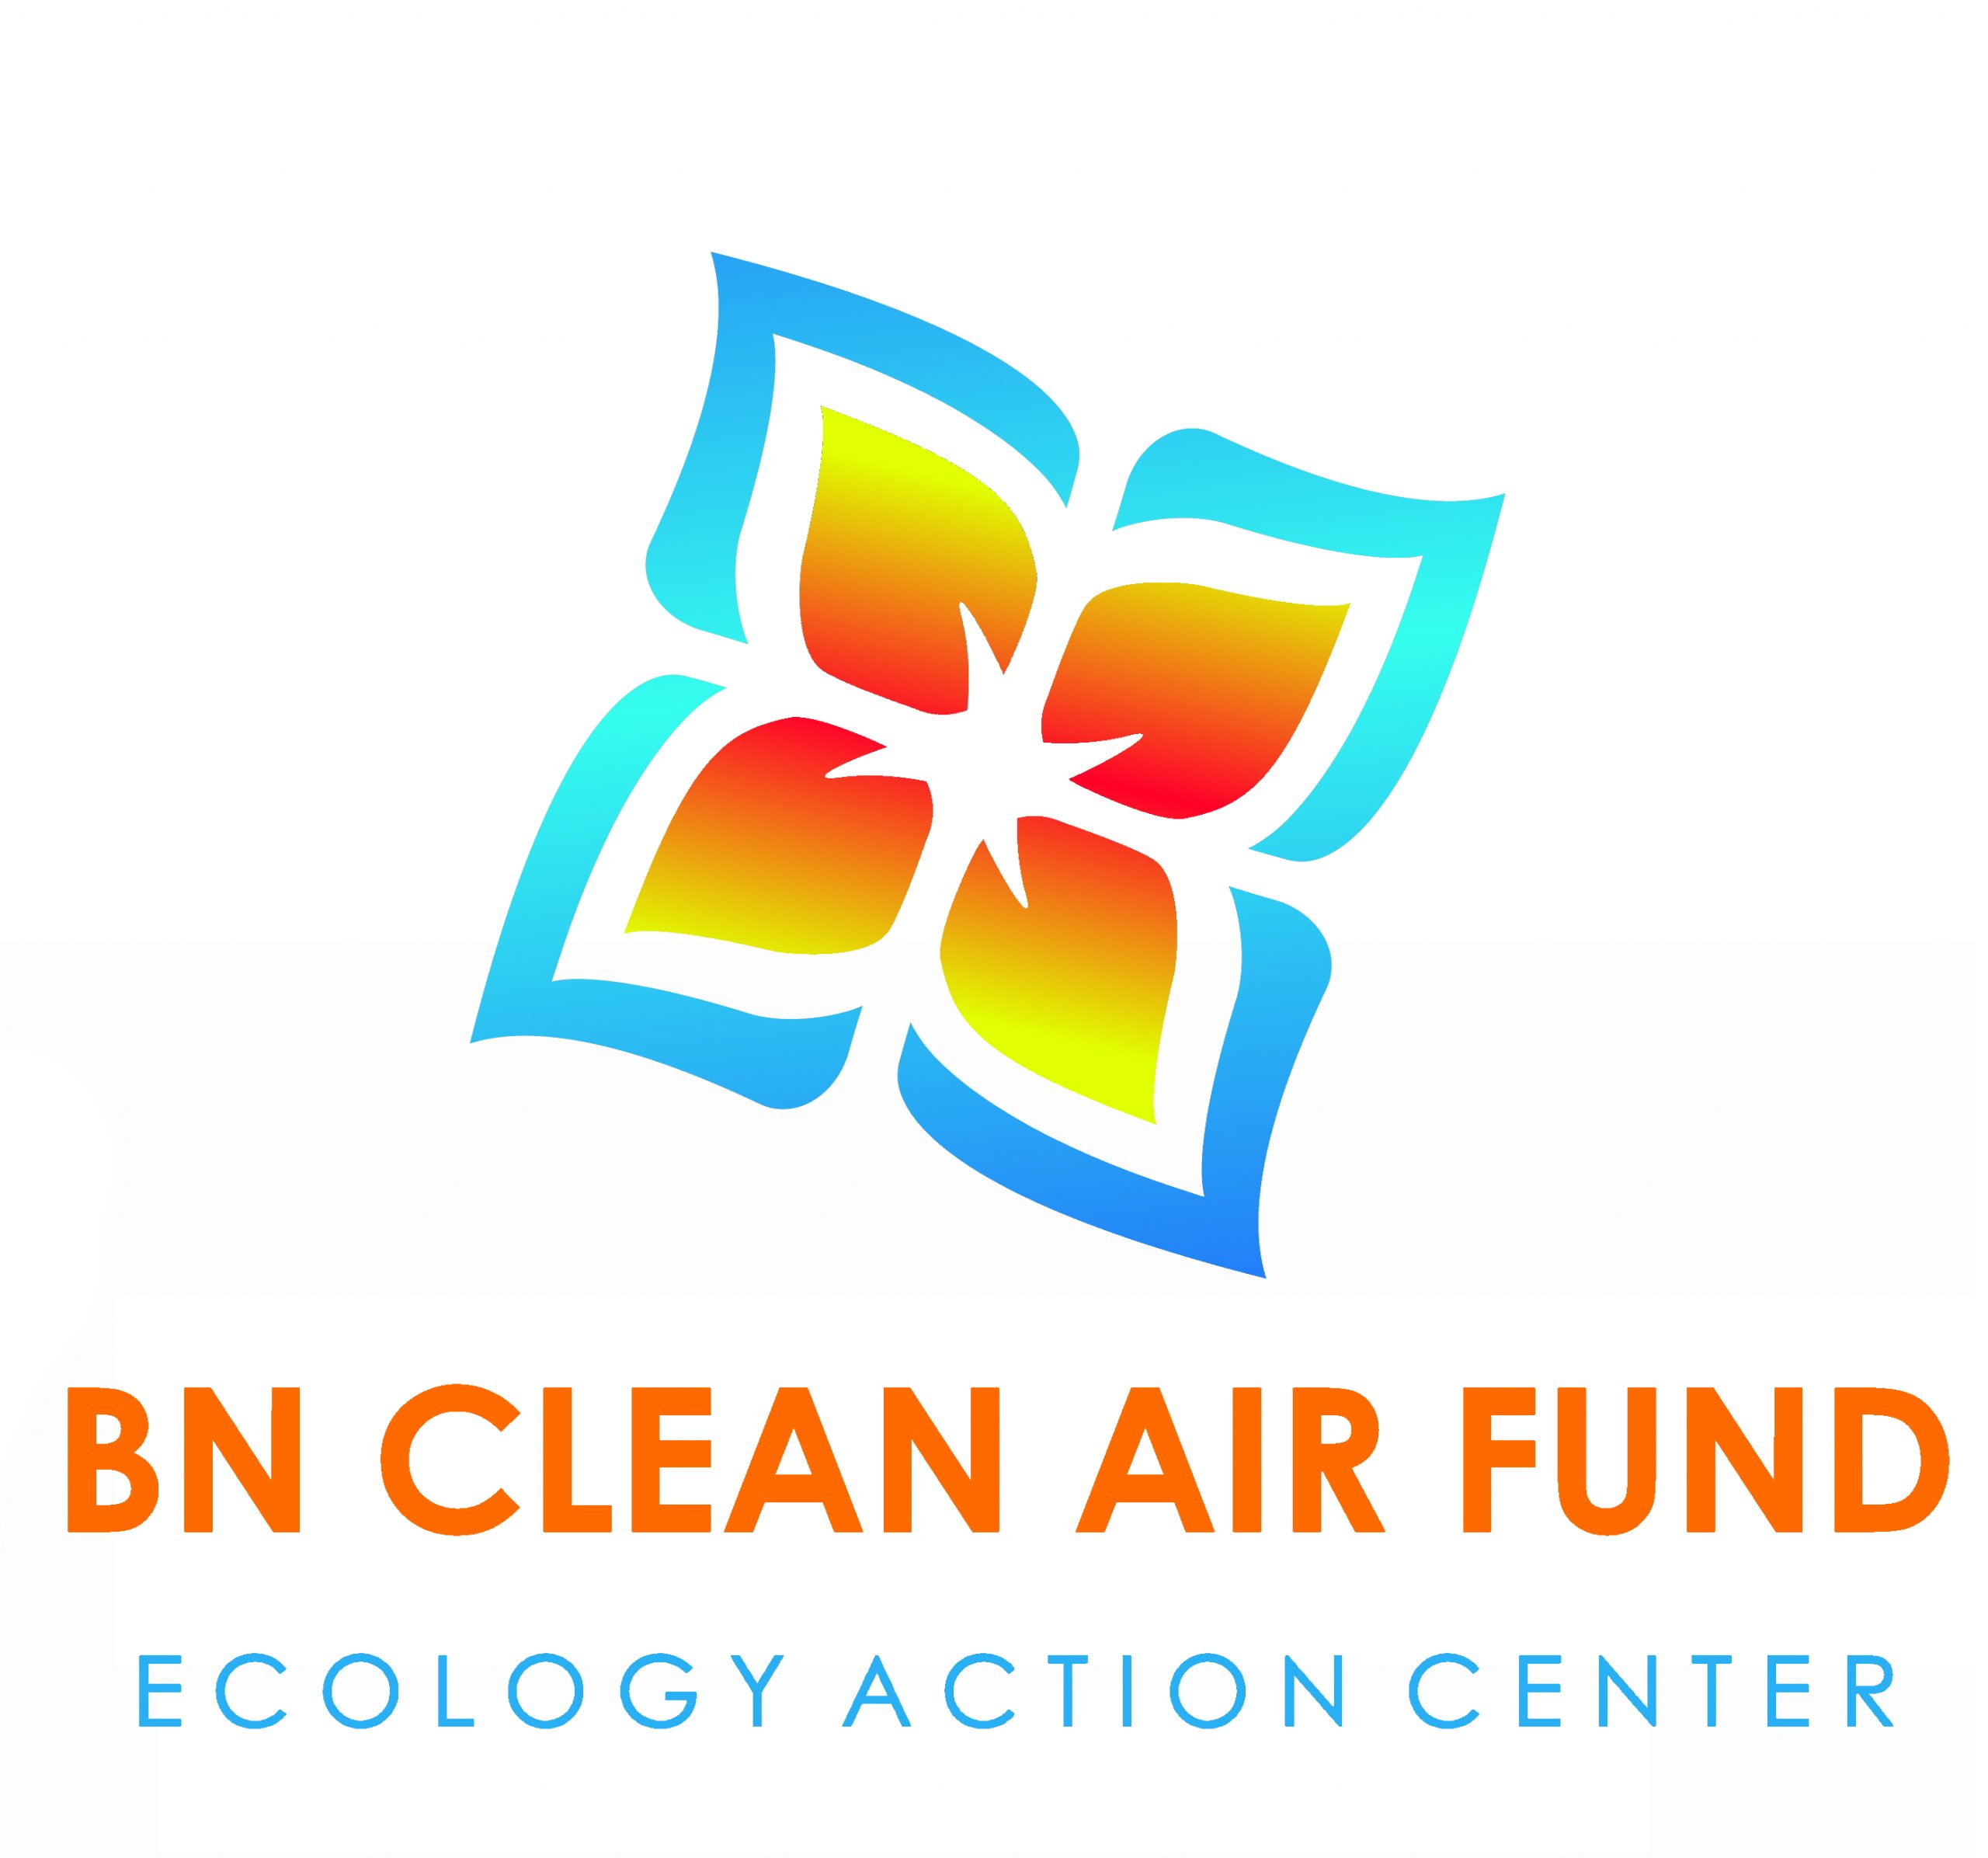 BN clean air fund logo